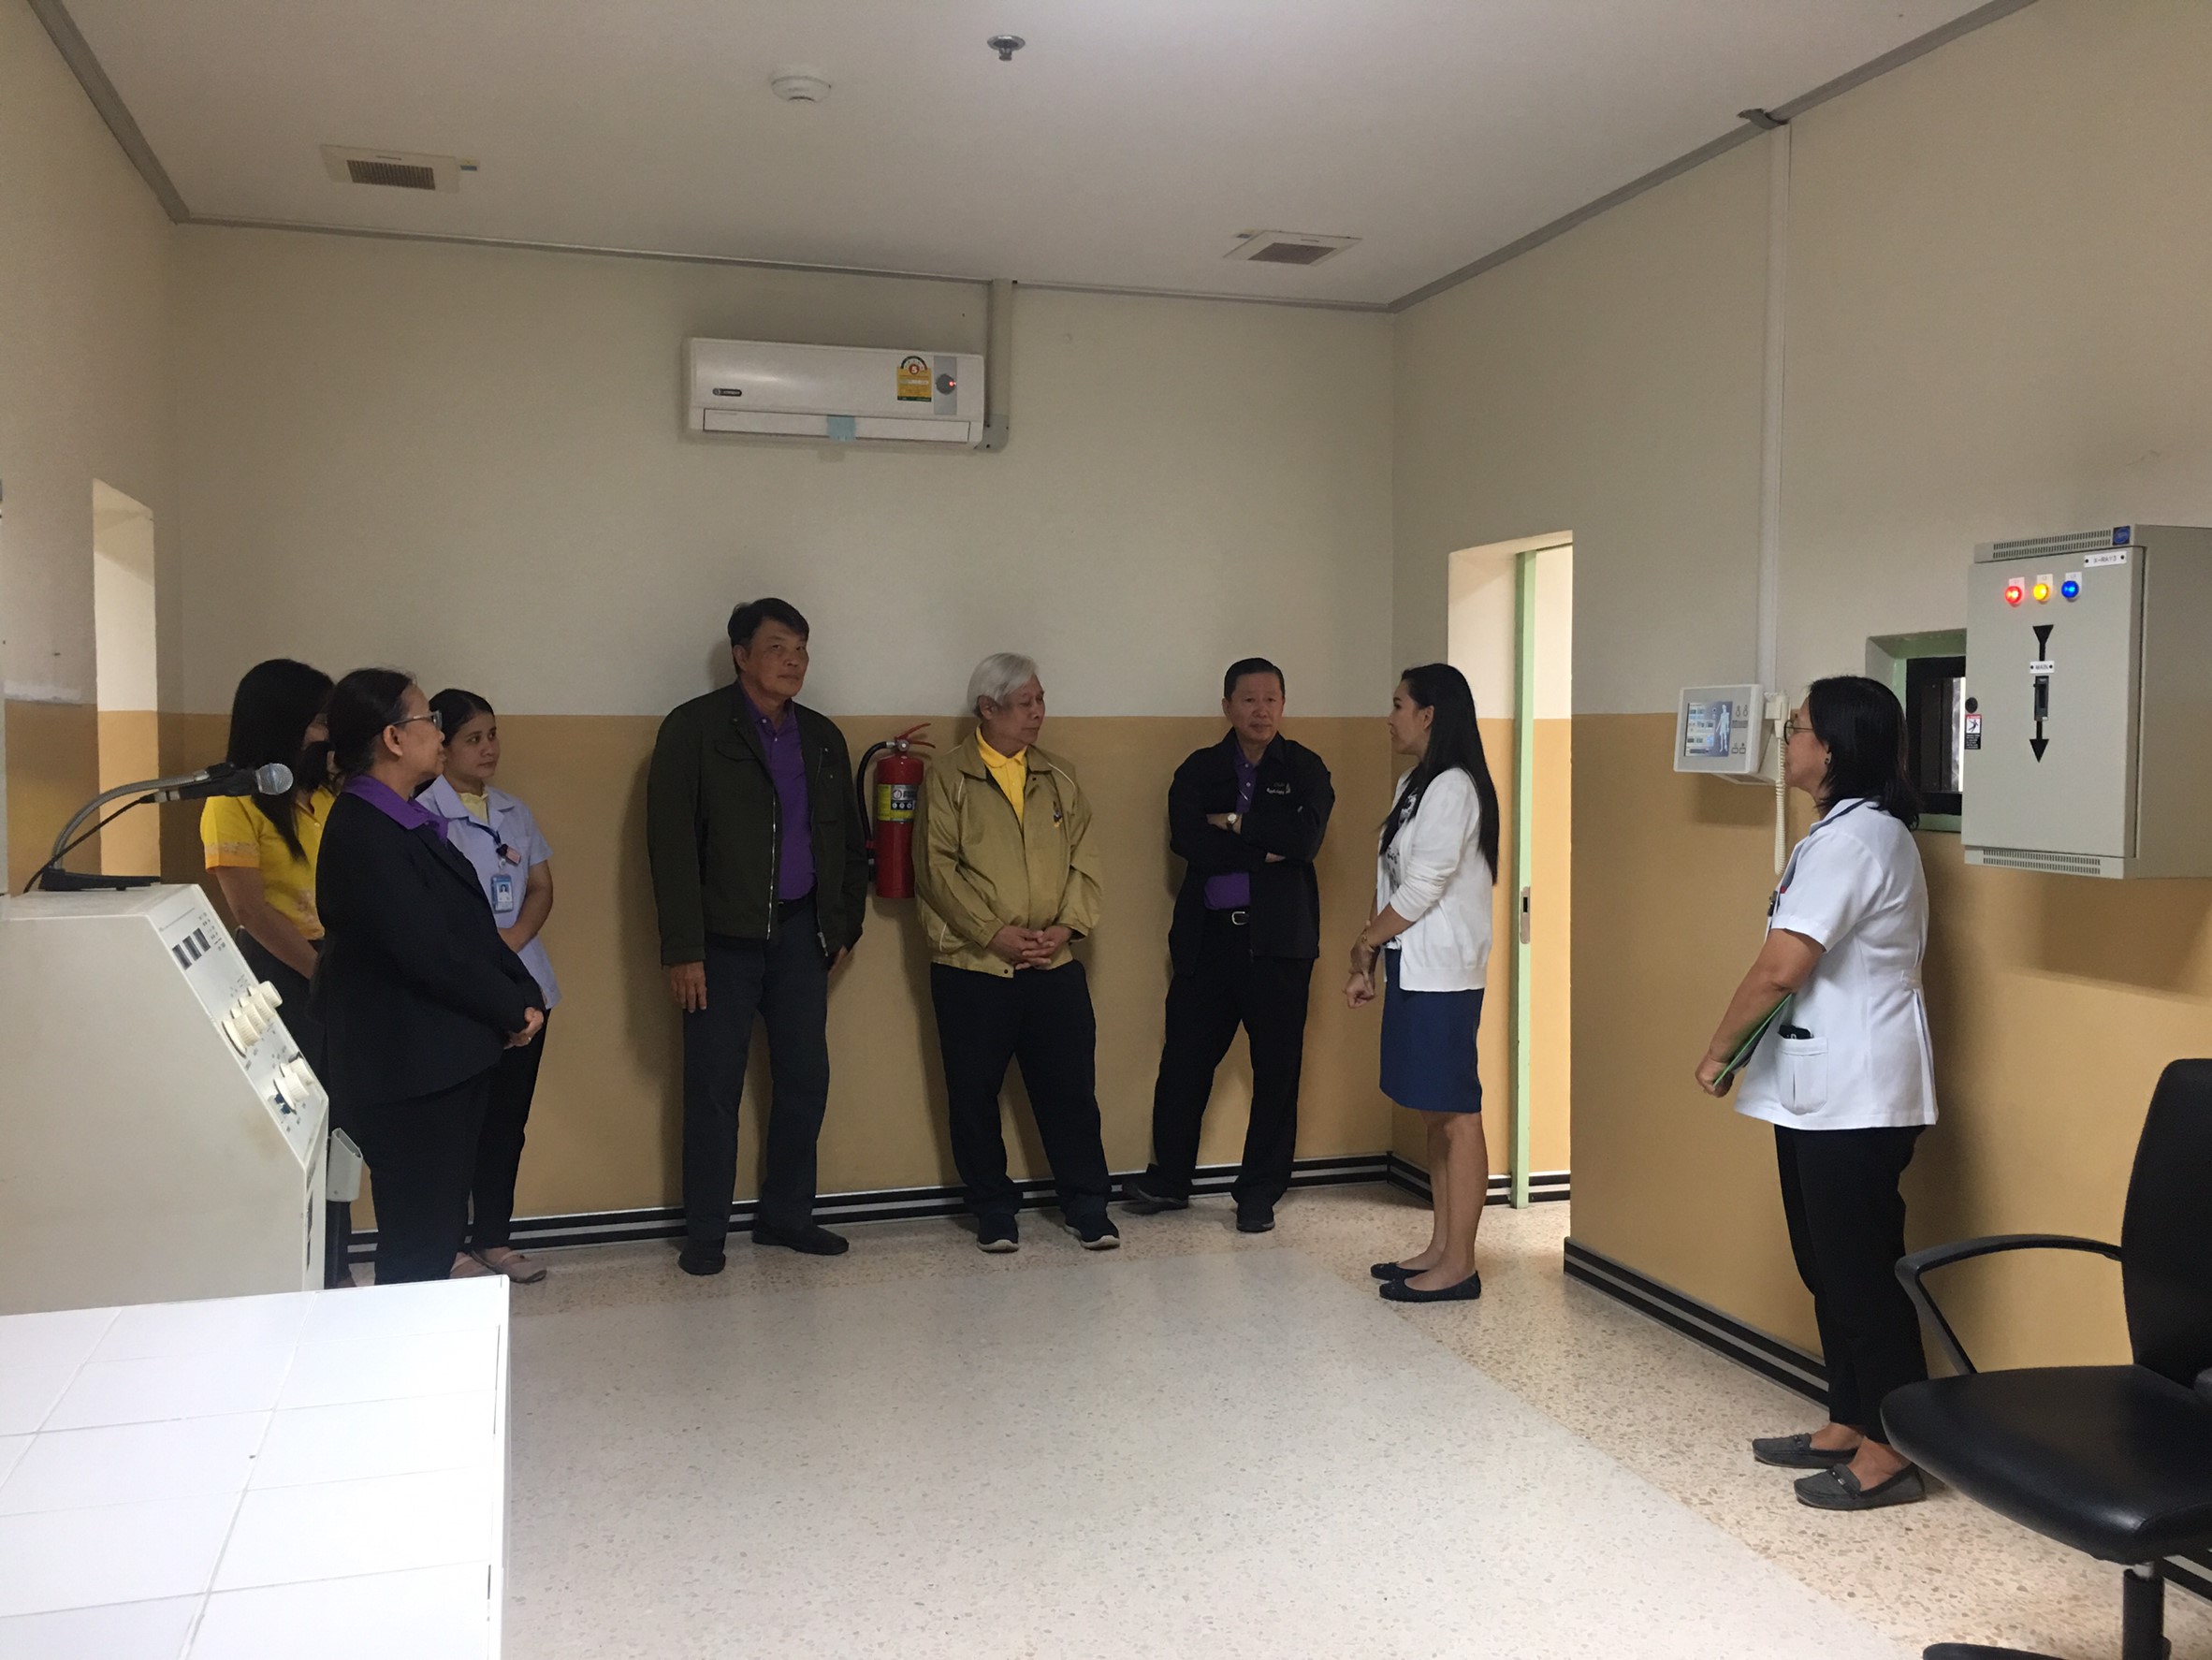 ประชุมวิชาการร่วมกับรังสีการแพทย์แห่งประเทศไทย ครั้งที่17 27-29 พ.ย. - พร้อมเข้าเยี่ยมและให้กำลังใจหน่วยงานรังสีวิทยาในพื้นที่จังหวัดอุบลราชธานีระหว่างวันที่ 25-26 พฤศจิกายน 2562 80